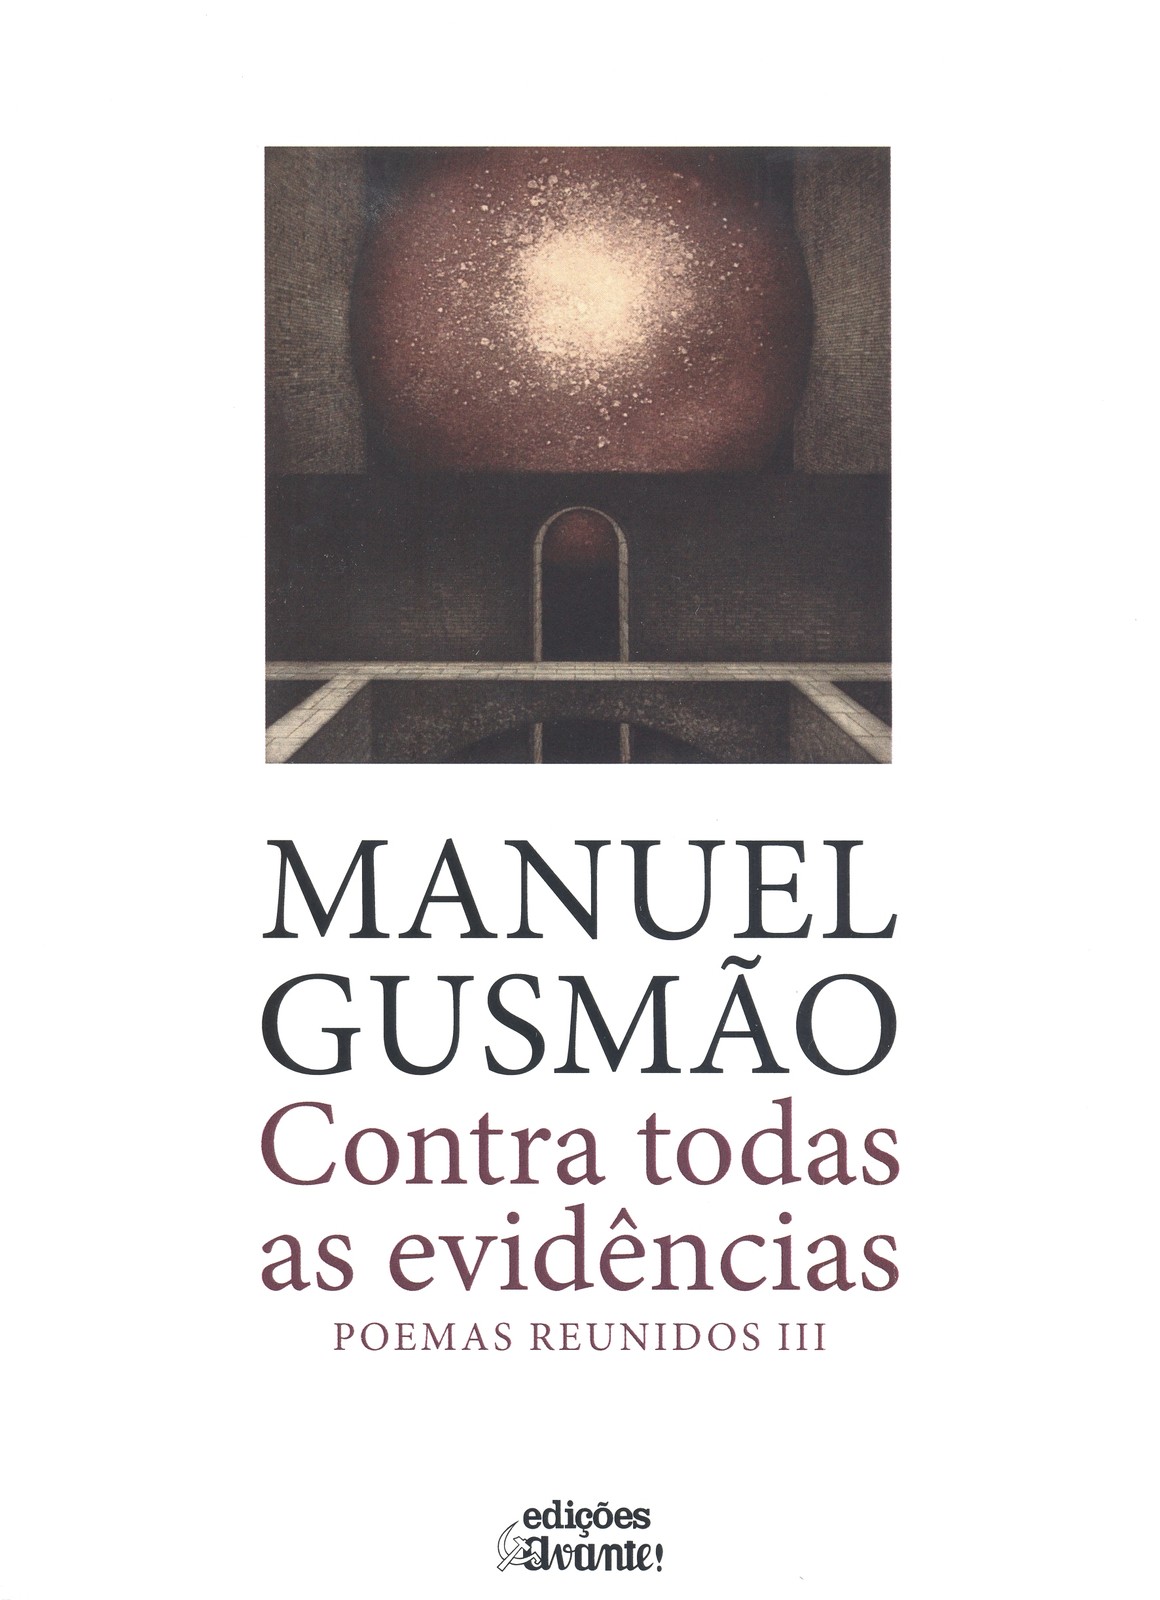 Manuel Gusmão - Contra Todas as Evidências, Poemas Reunidos III